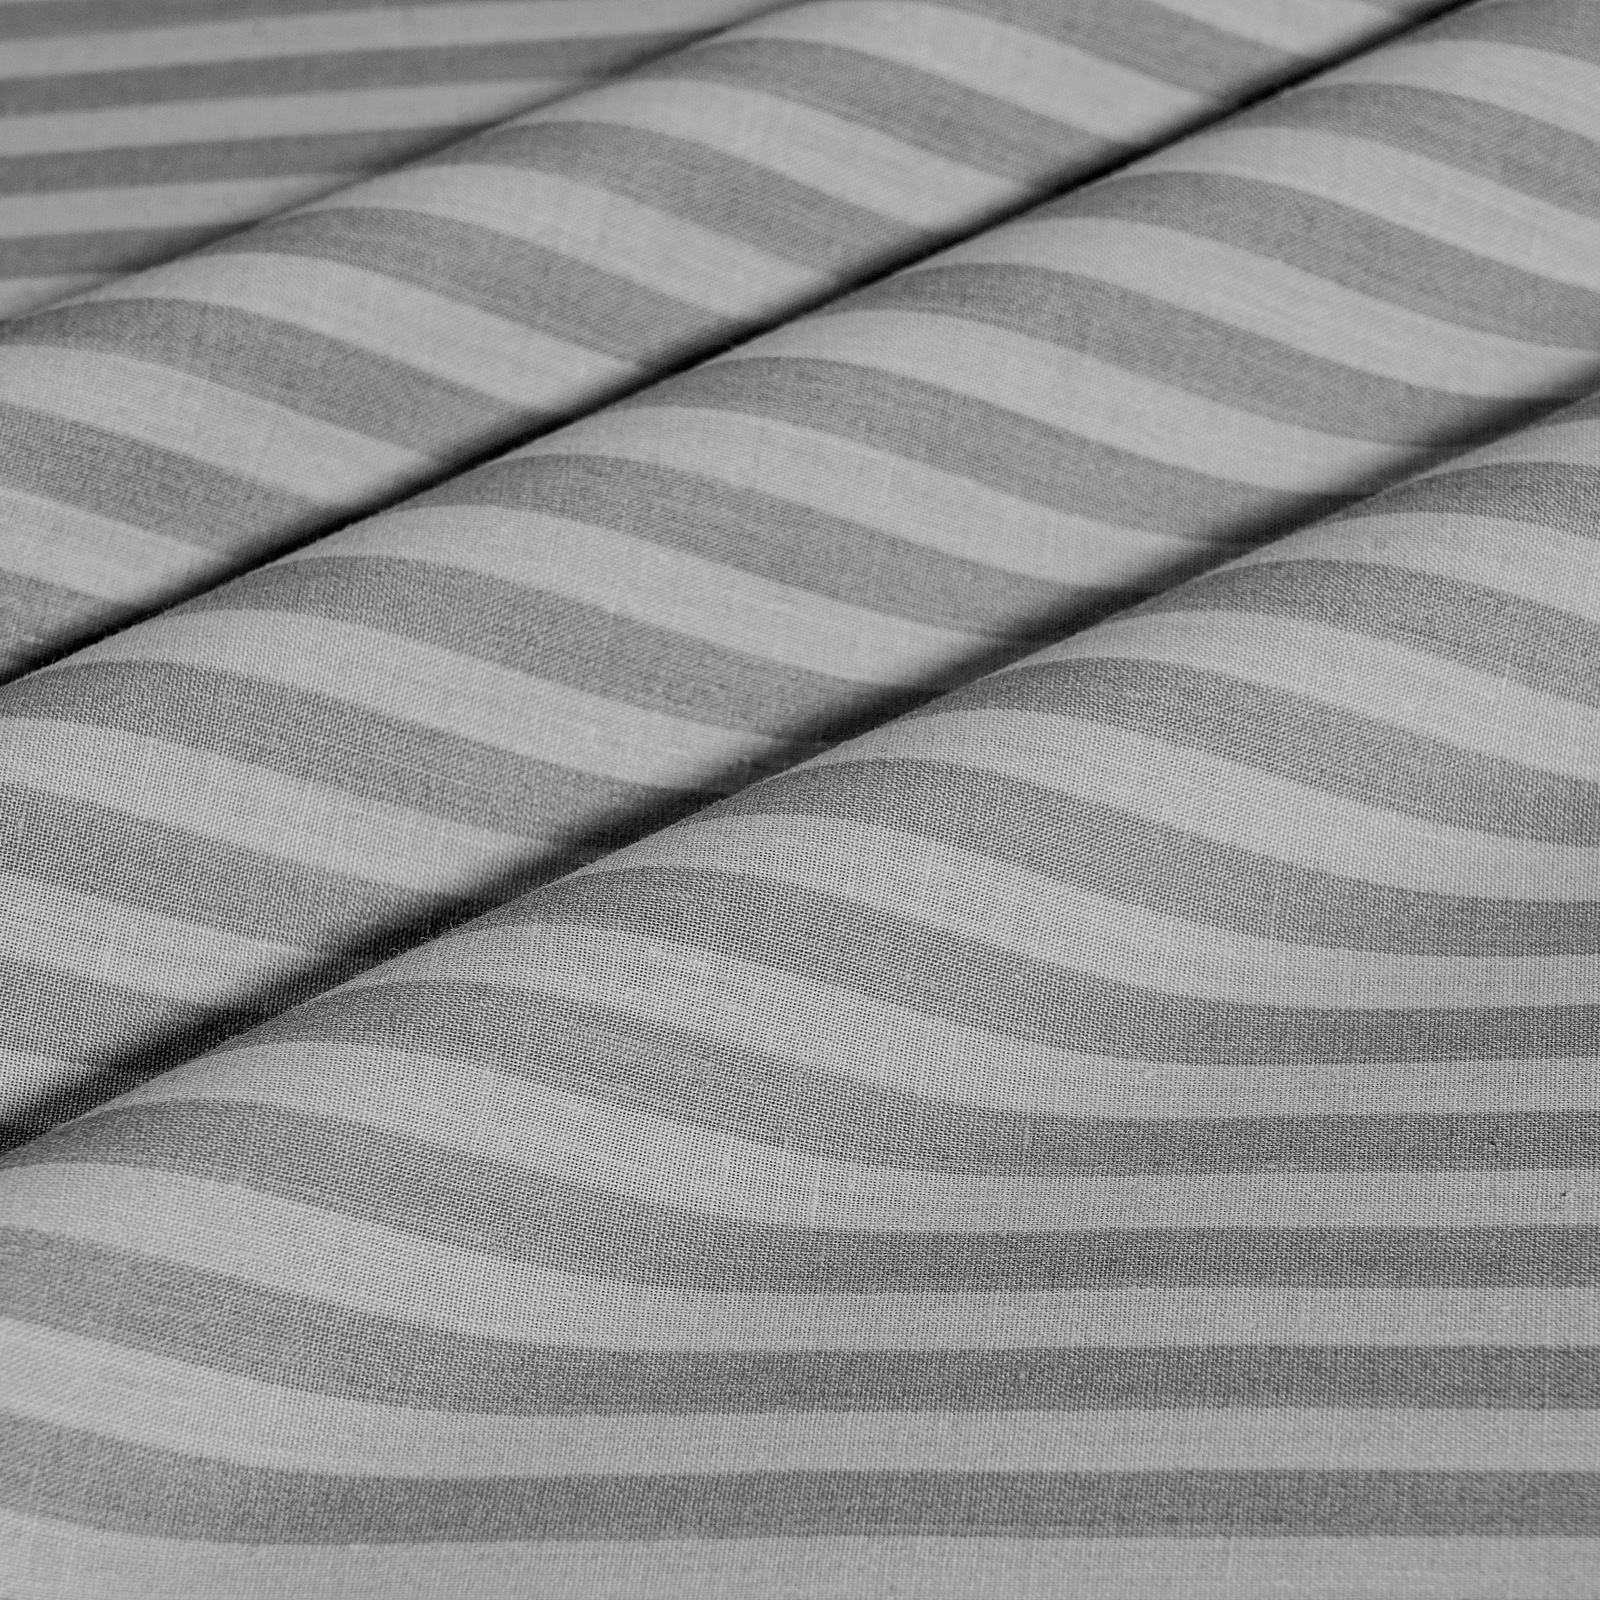 Простыня Medsleep Линдау серый 220х240 см - фото 3